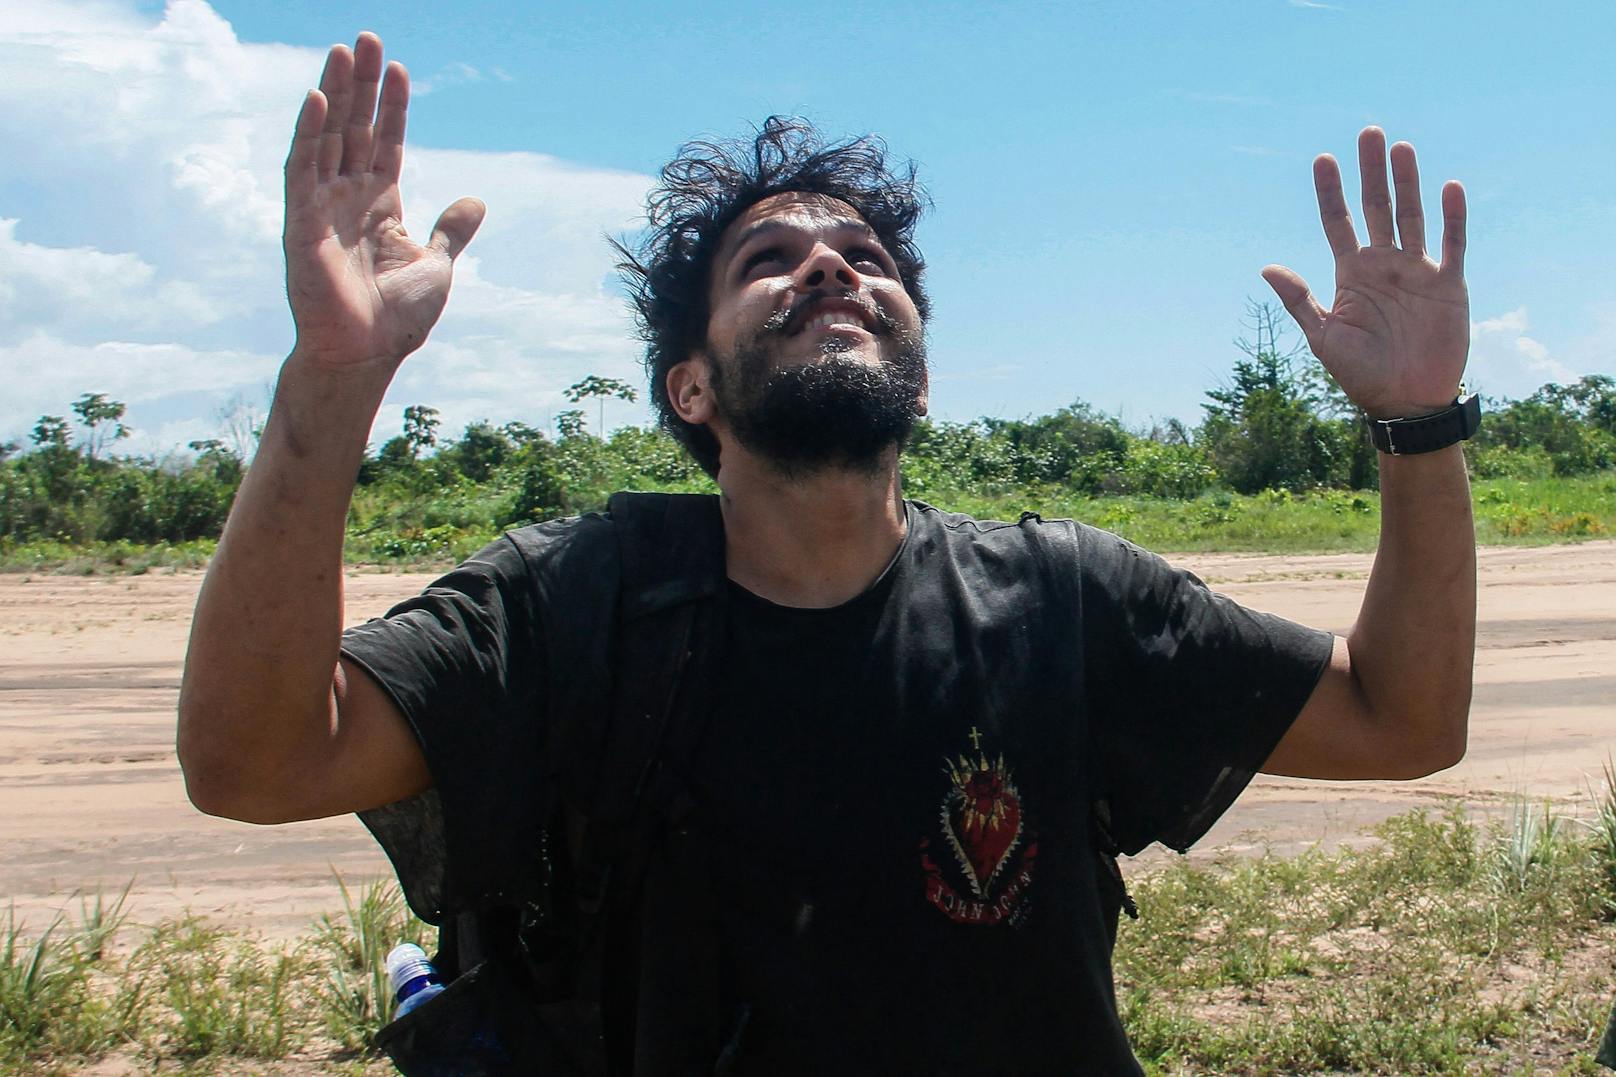 Antonio Sena ist nach einem Monat im Regenwald ein völlig anderer Mensch geworden